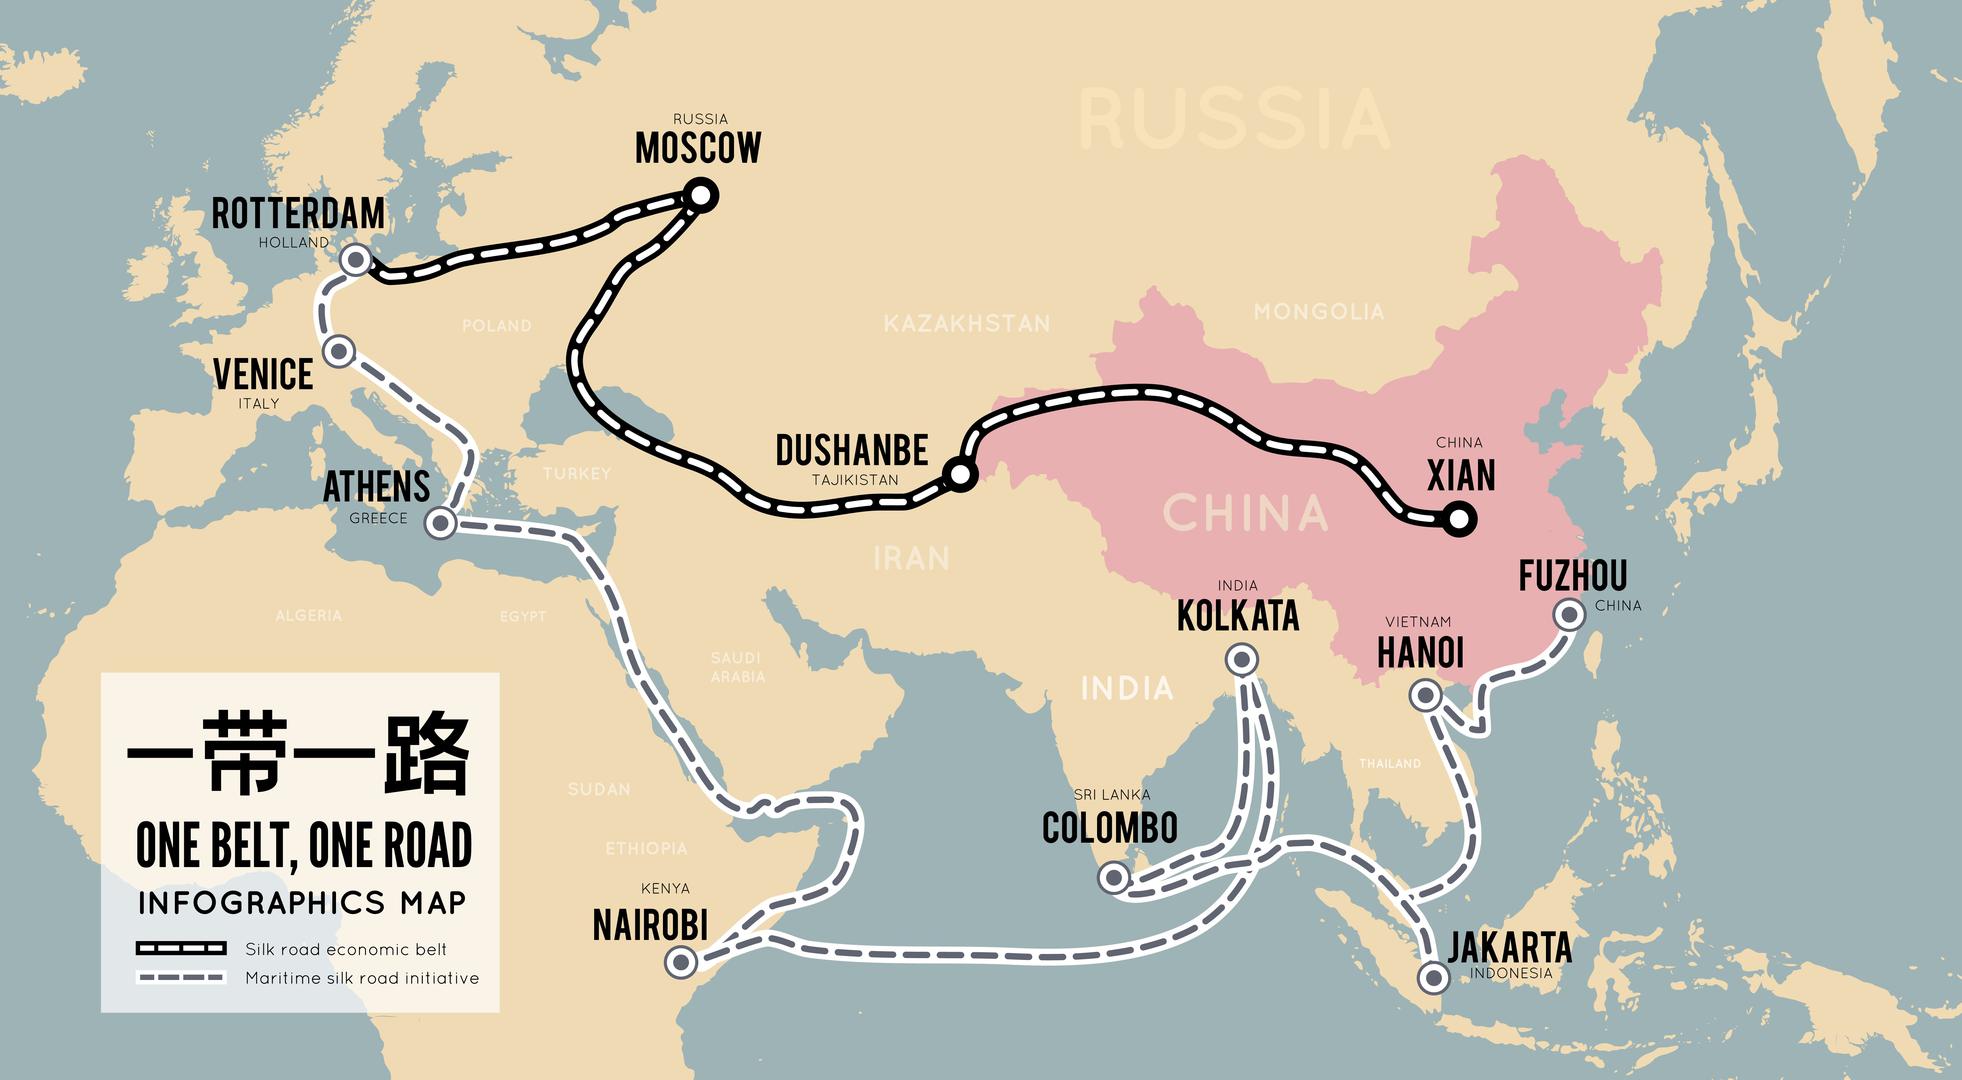 One Belt, One Road (tzv. OBOR), inicijativa iz 2013. kao globalna kineska strategija osnaživanja odnosa i ulaganja